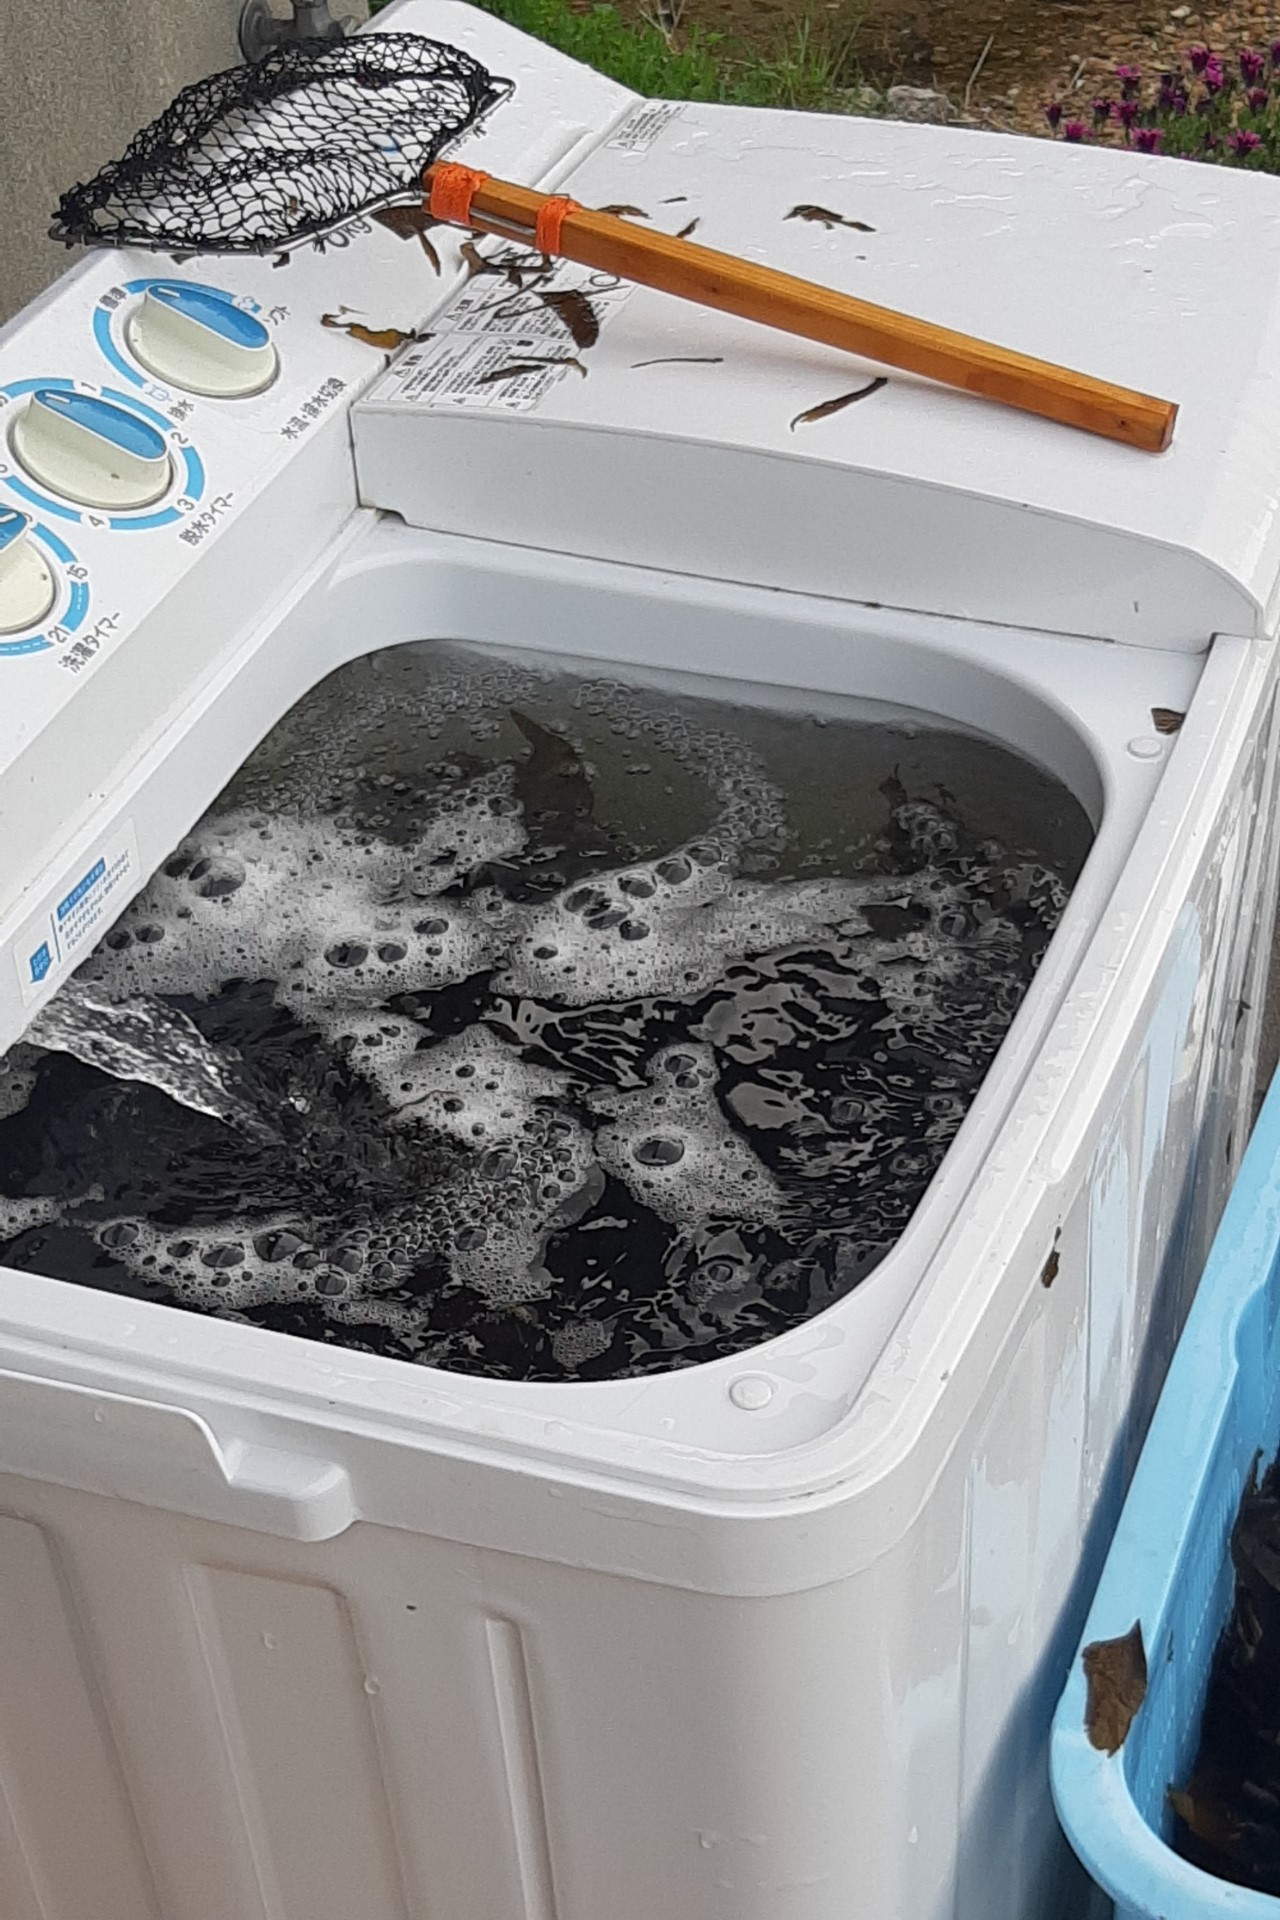 温泉津の「天然わかめ」を洗濯機で洗っている様子